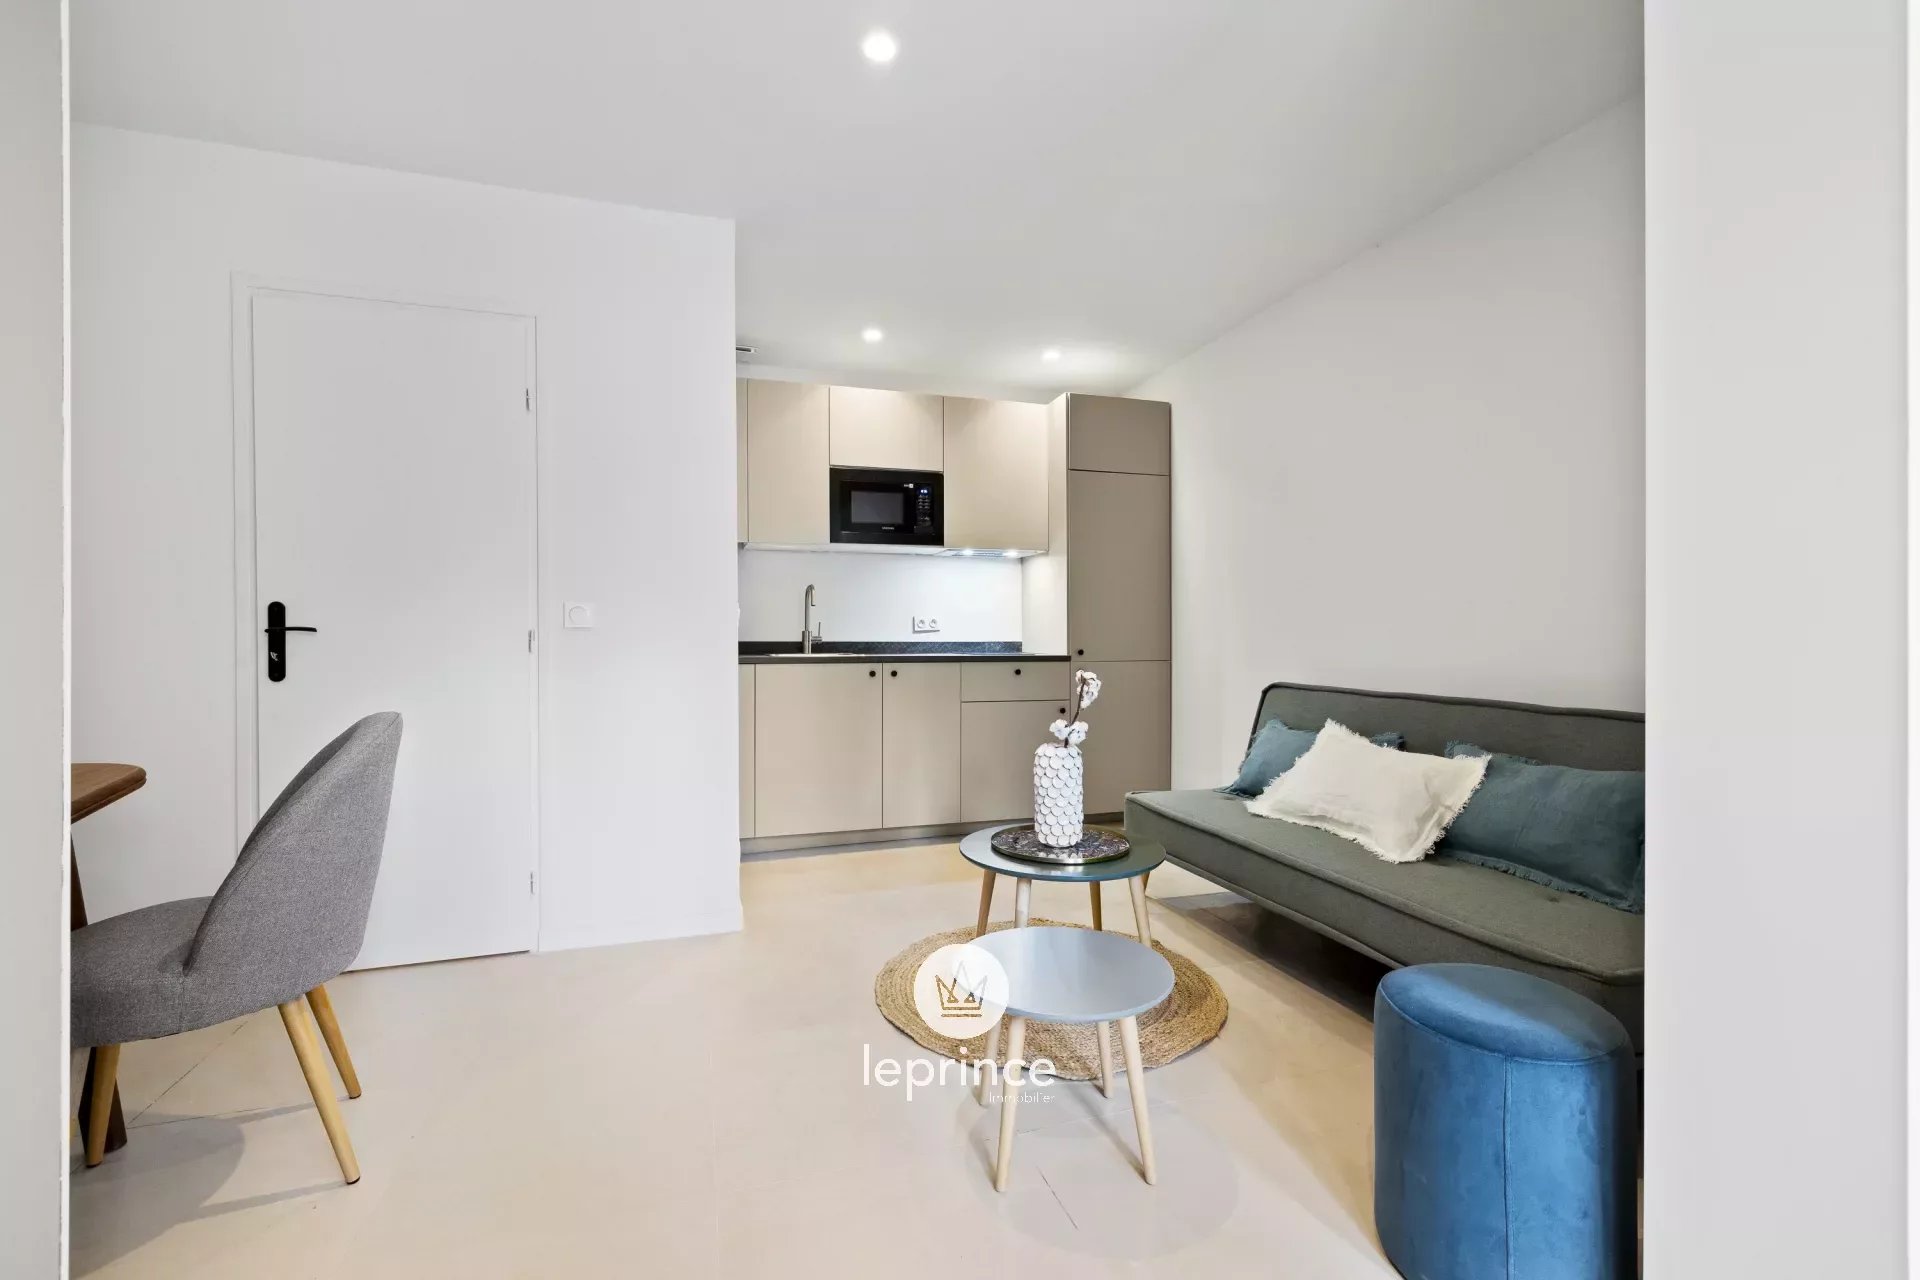 Vente Appartement 25m² 1 Pièce à Nice (06000) - Leprince Immobilier